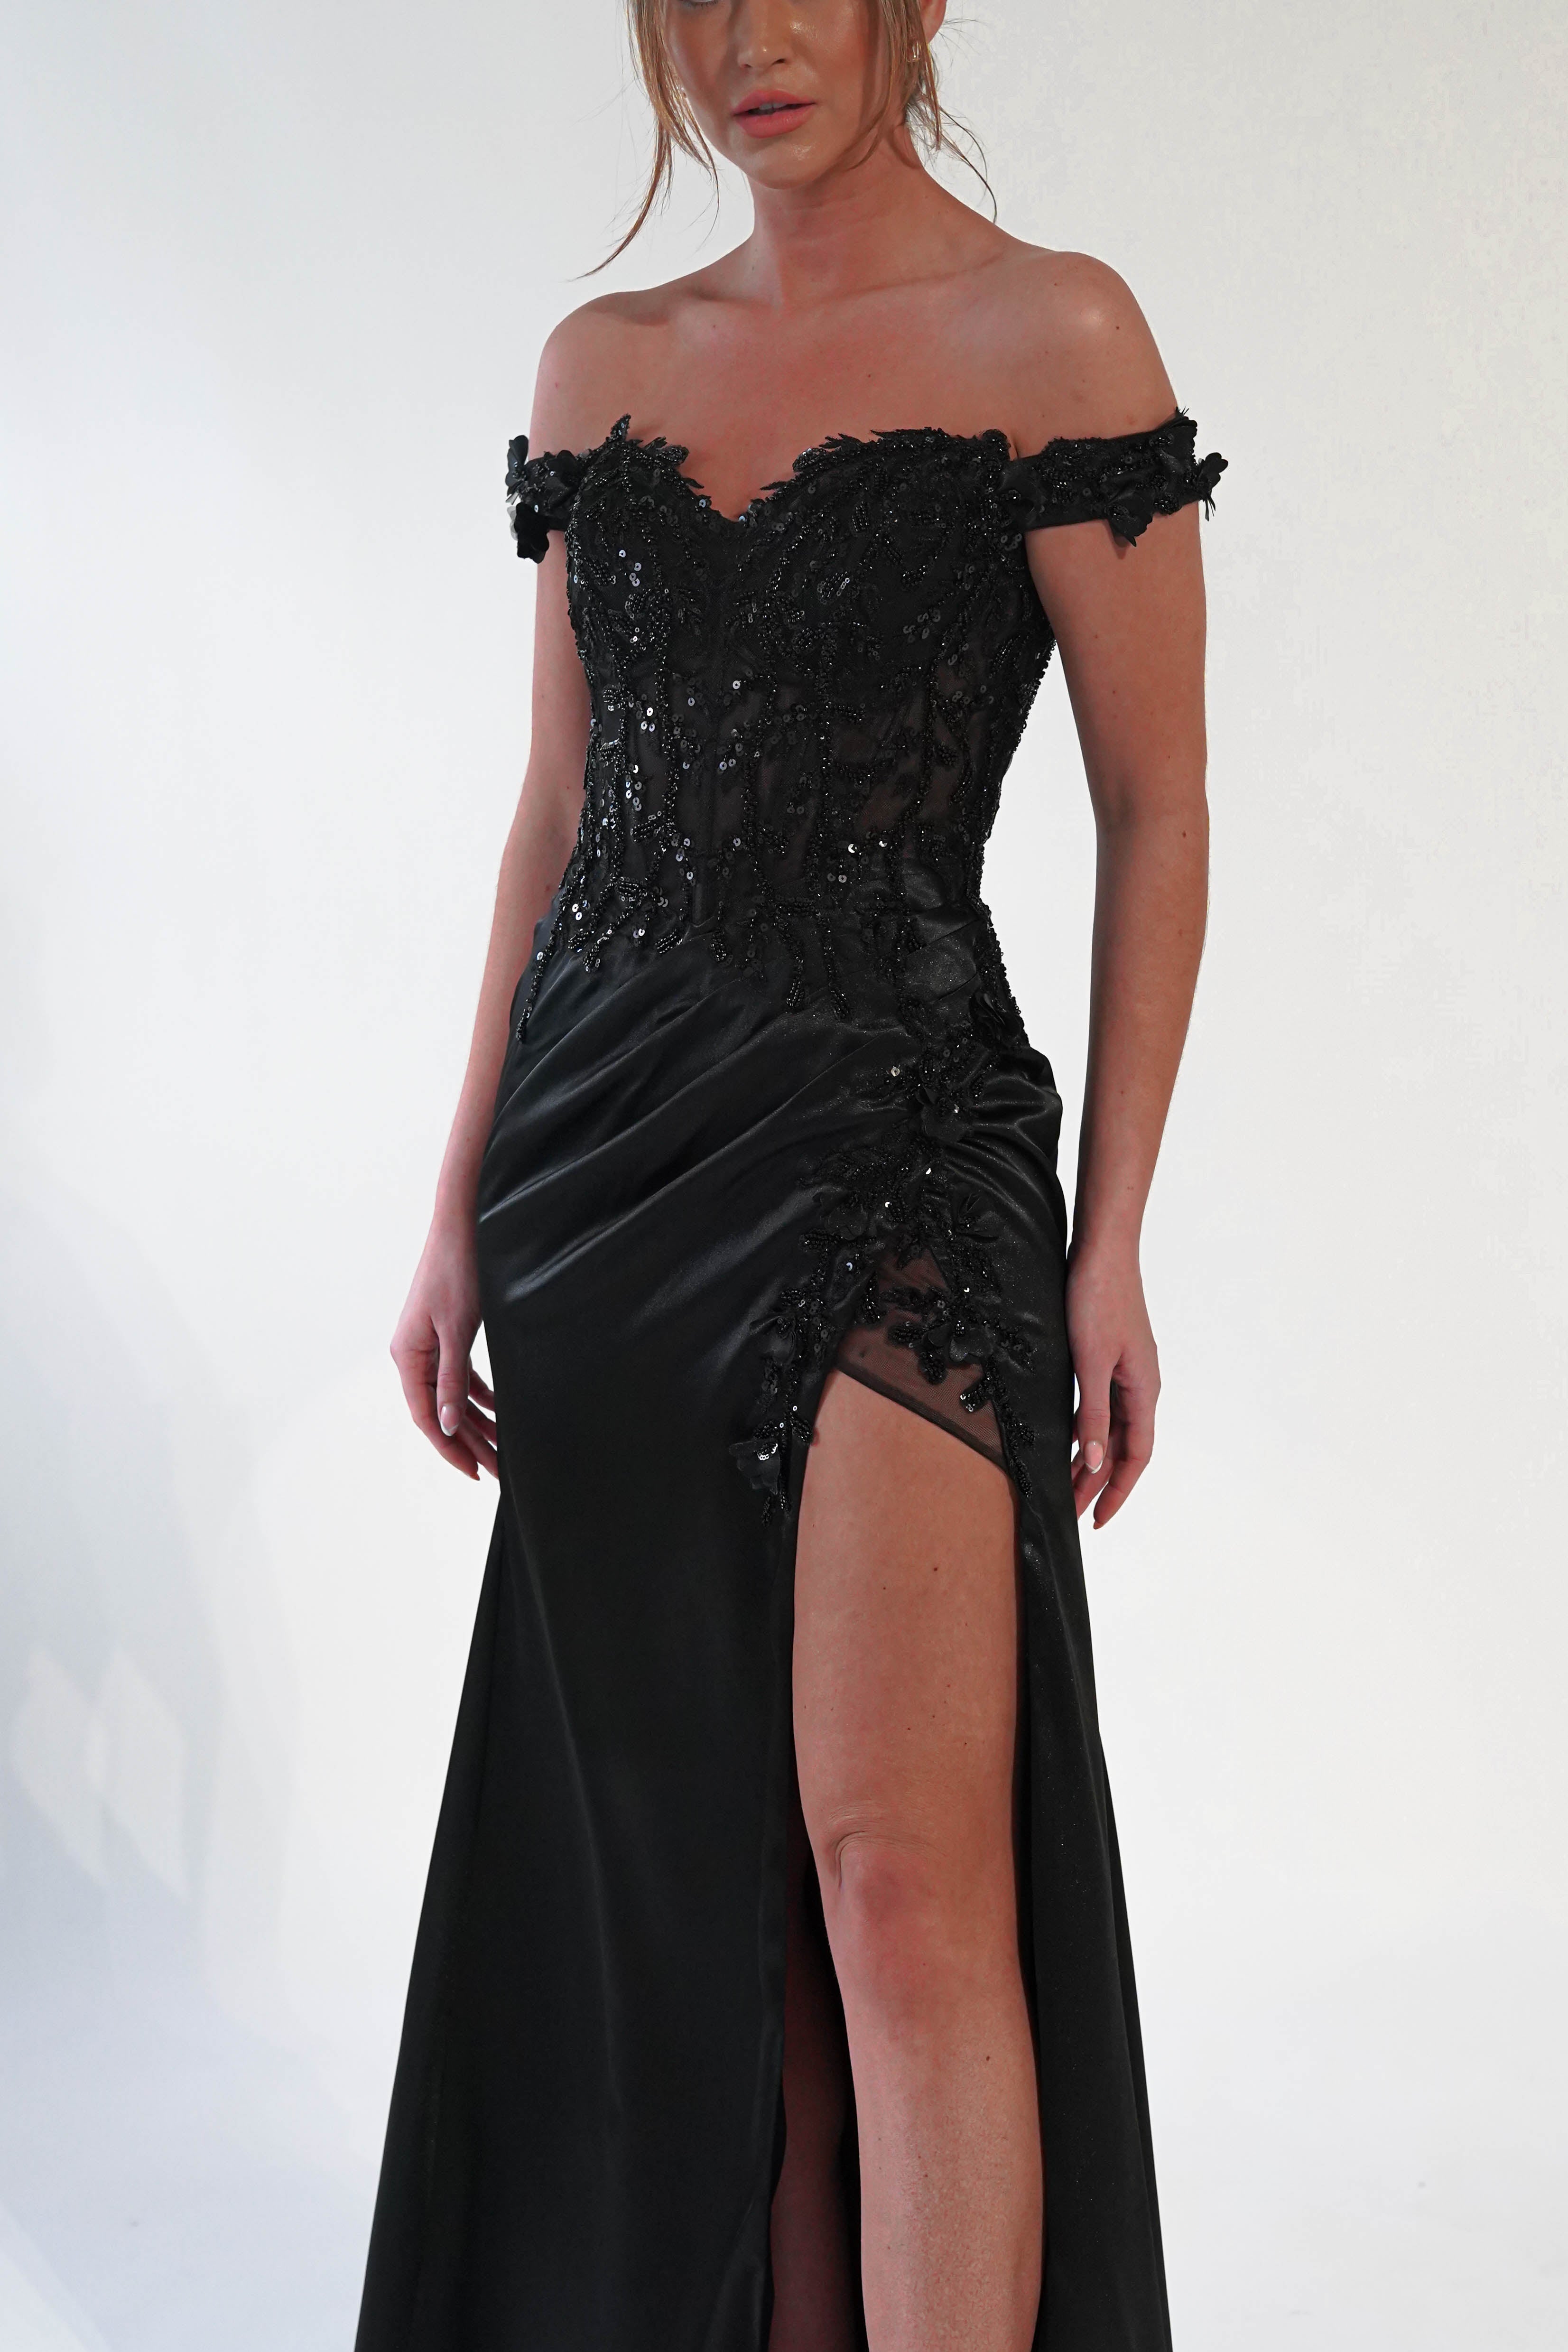 khacy-embellished-gown-black-dresses-52732541075797.jpg